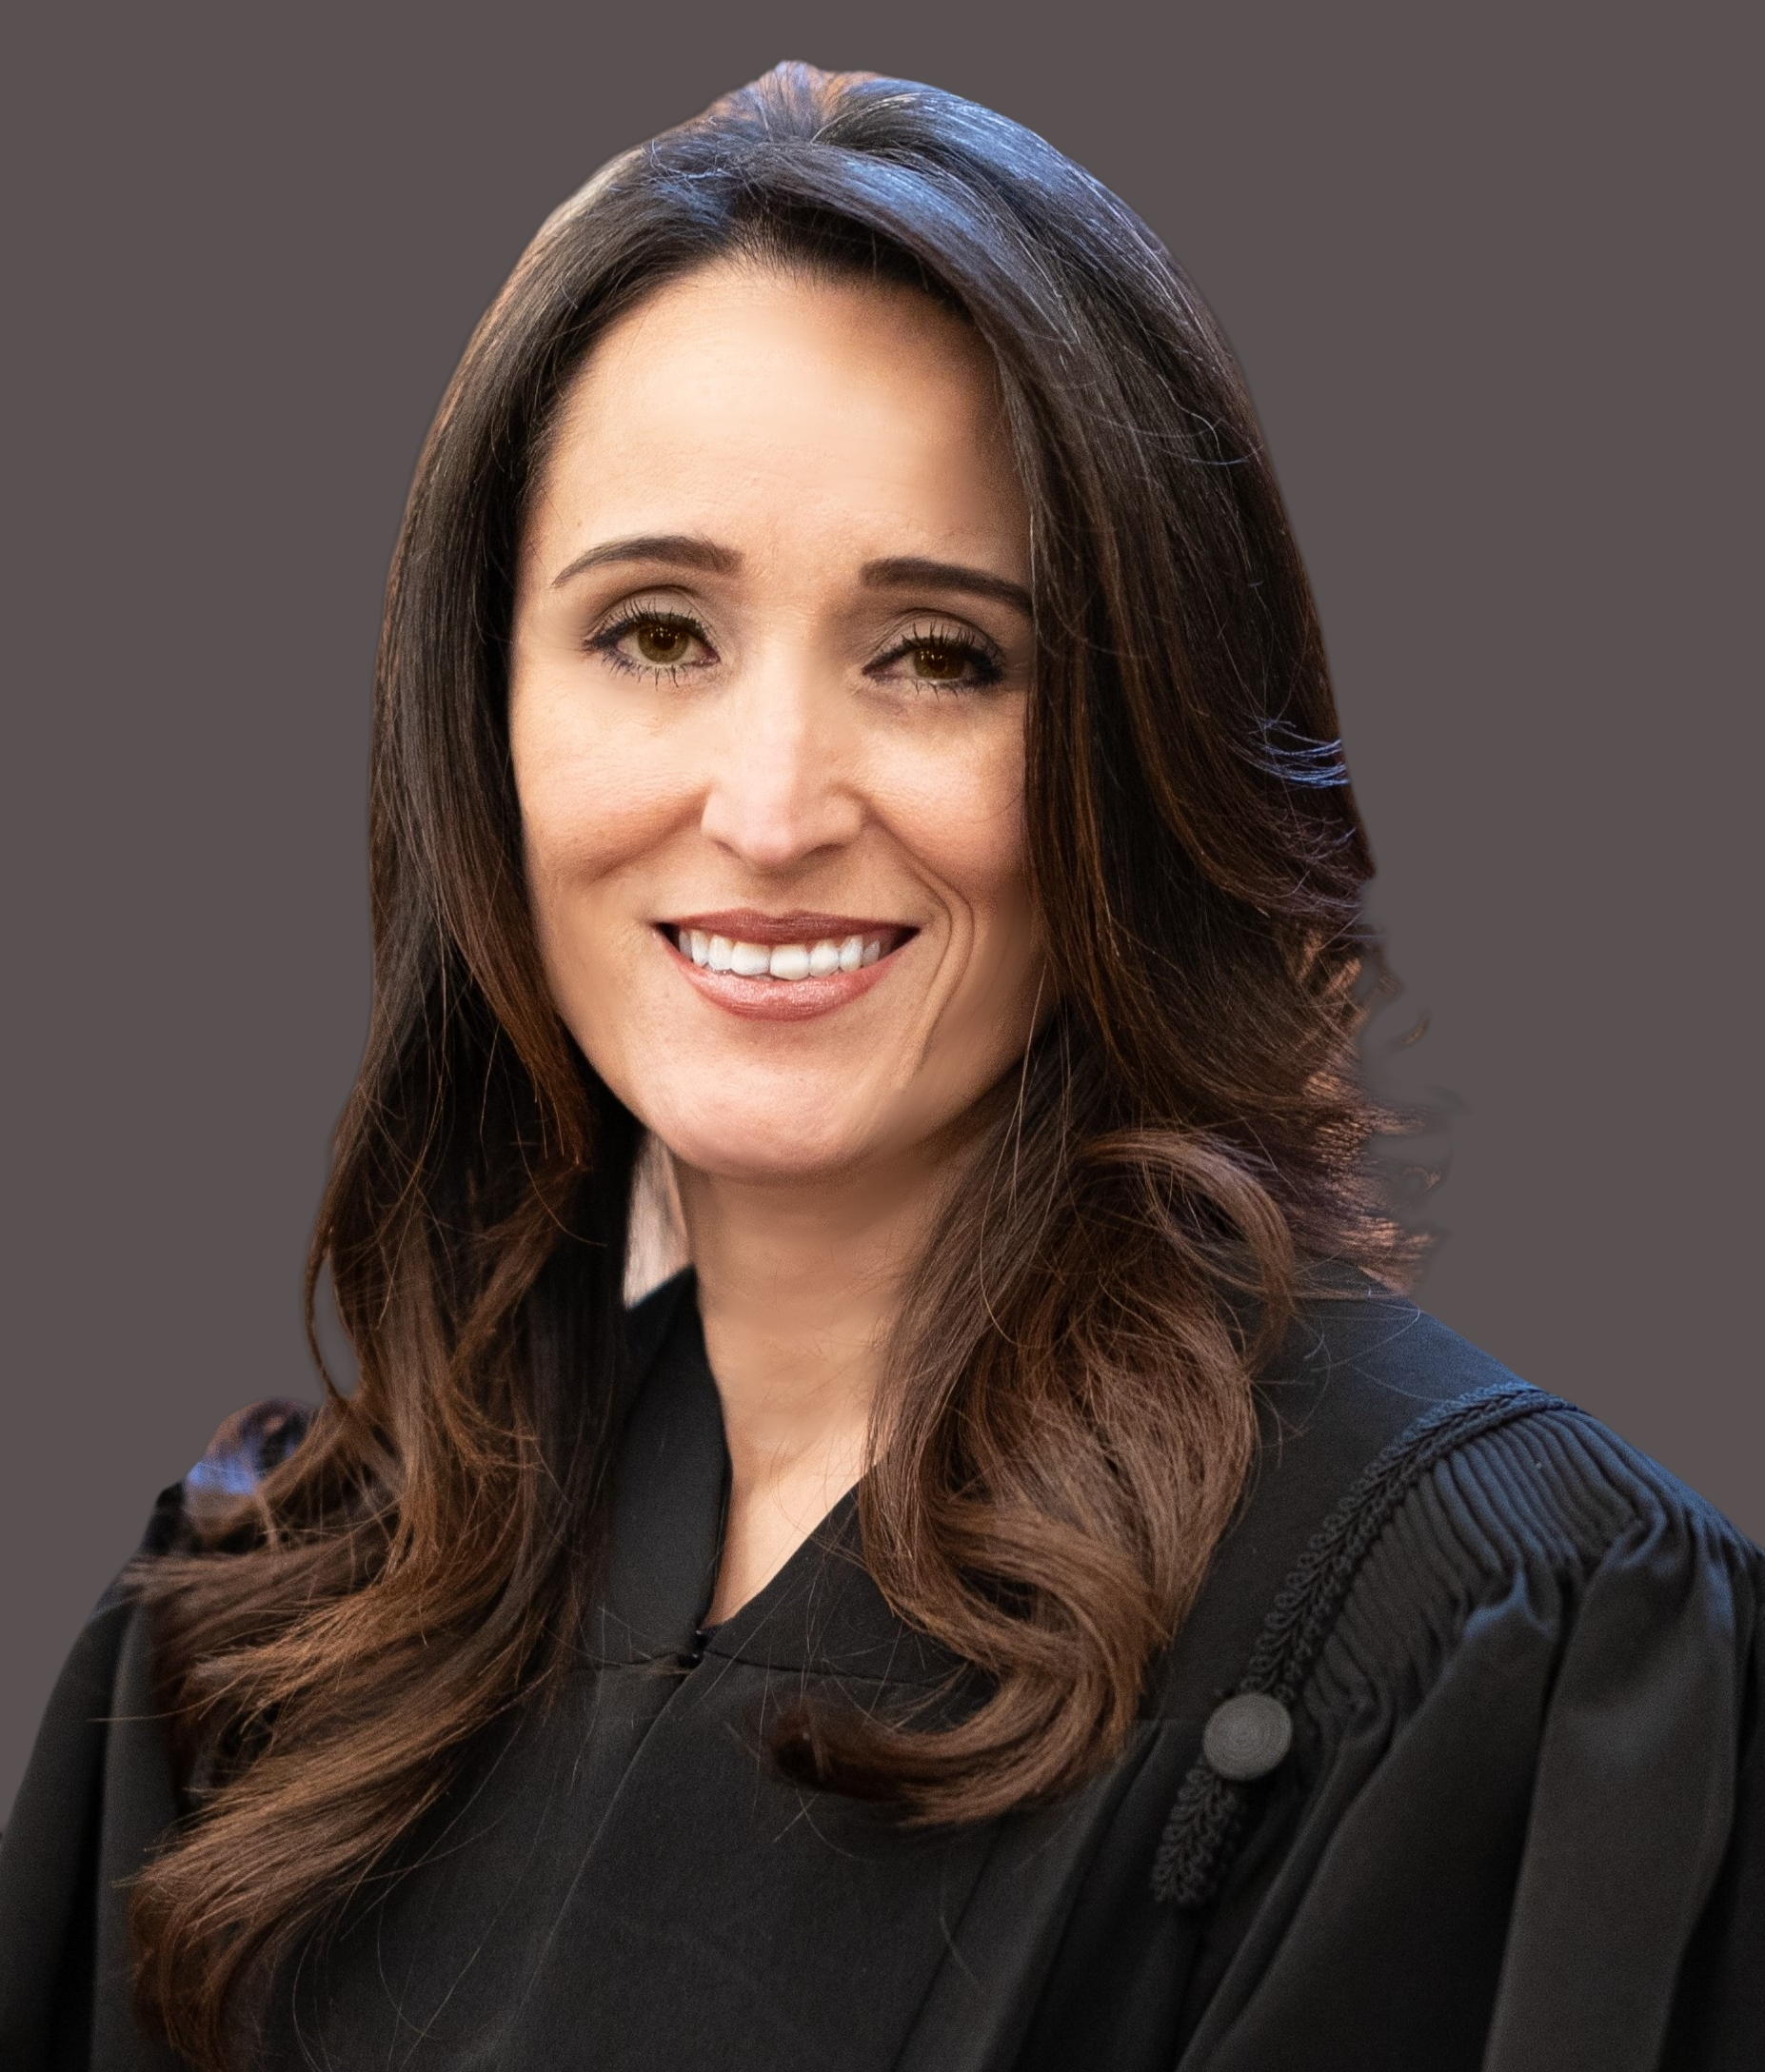 Photo of Justice Veronica Rivas-Molloy